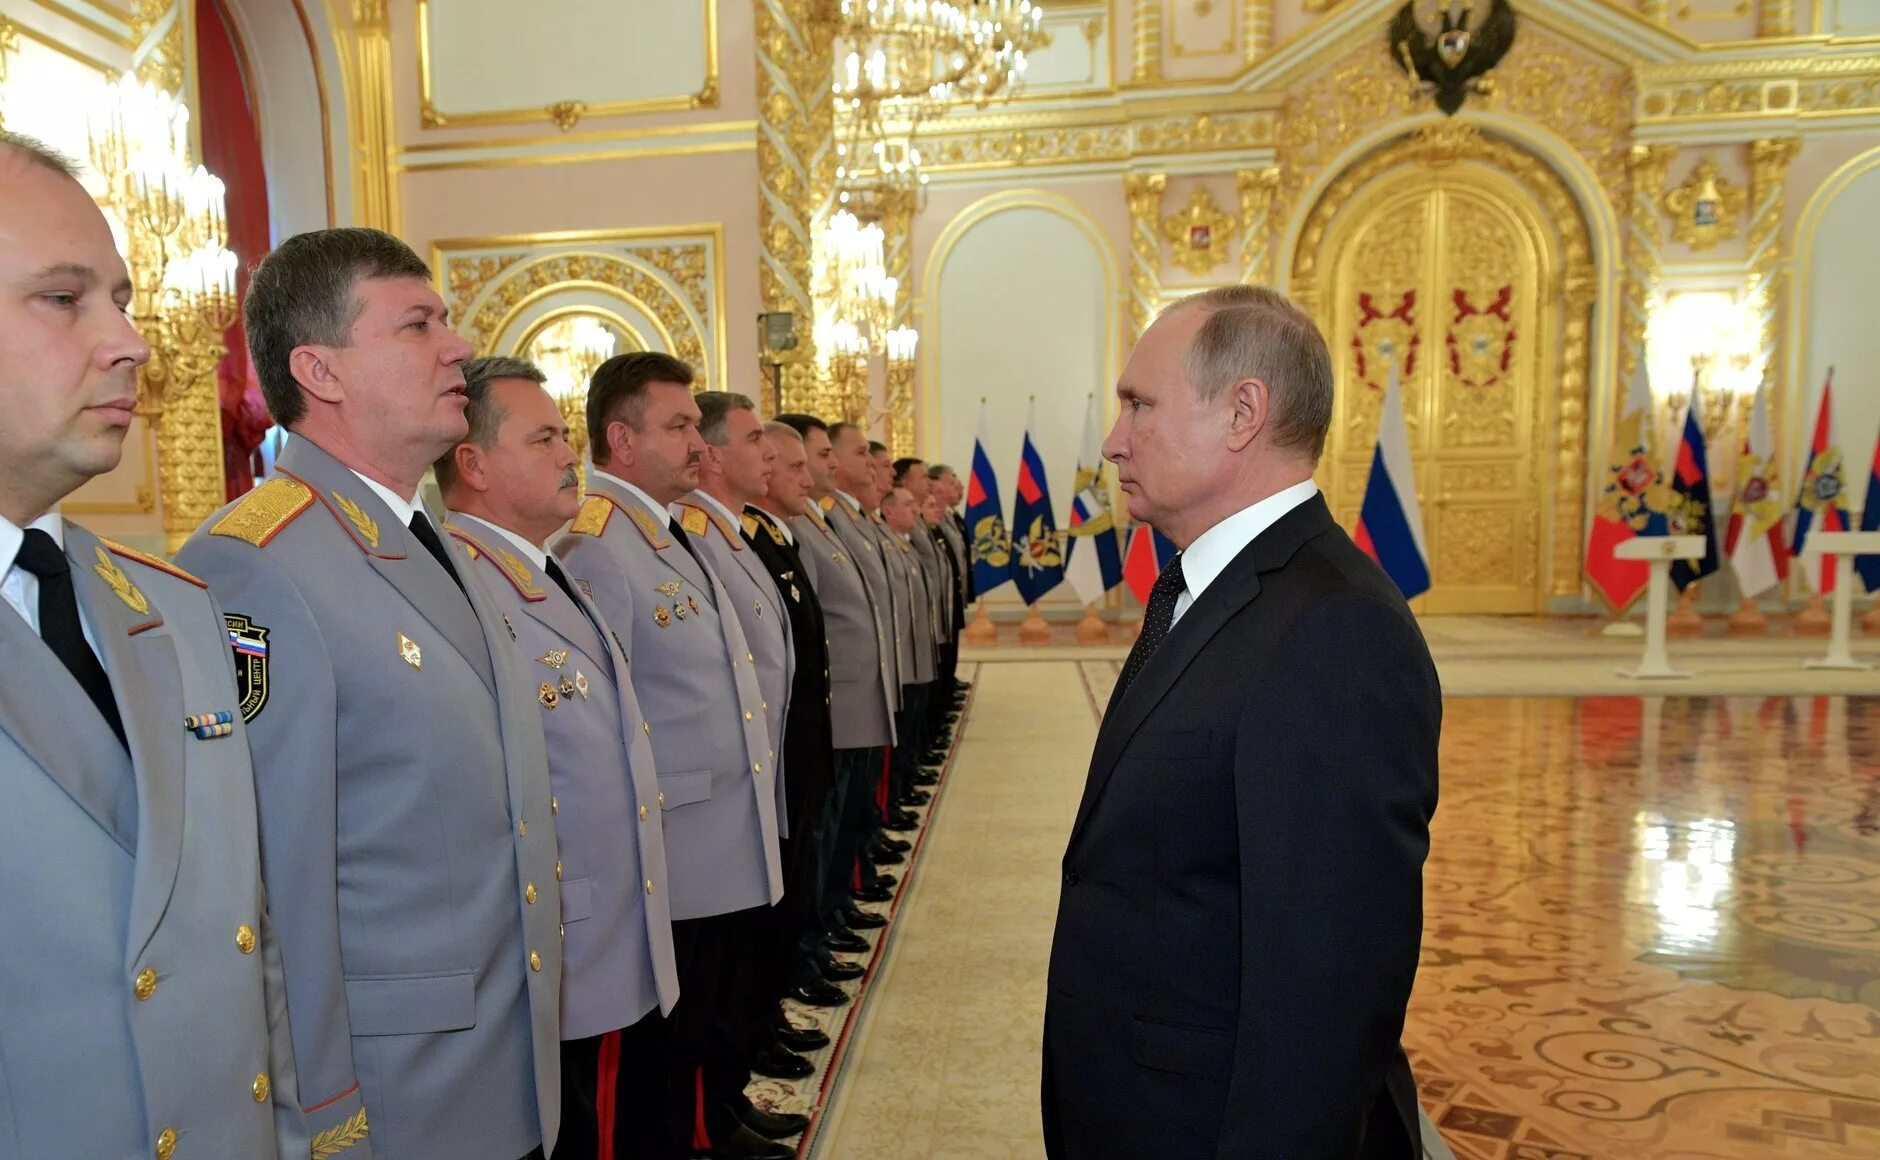 Генералы в Кремле. Церемония представления высших офицеров. Вручение генеральских погон в Кремле.